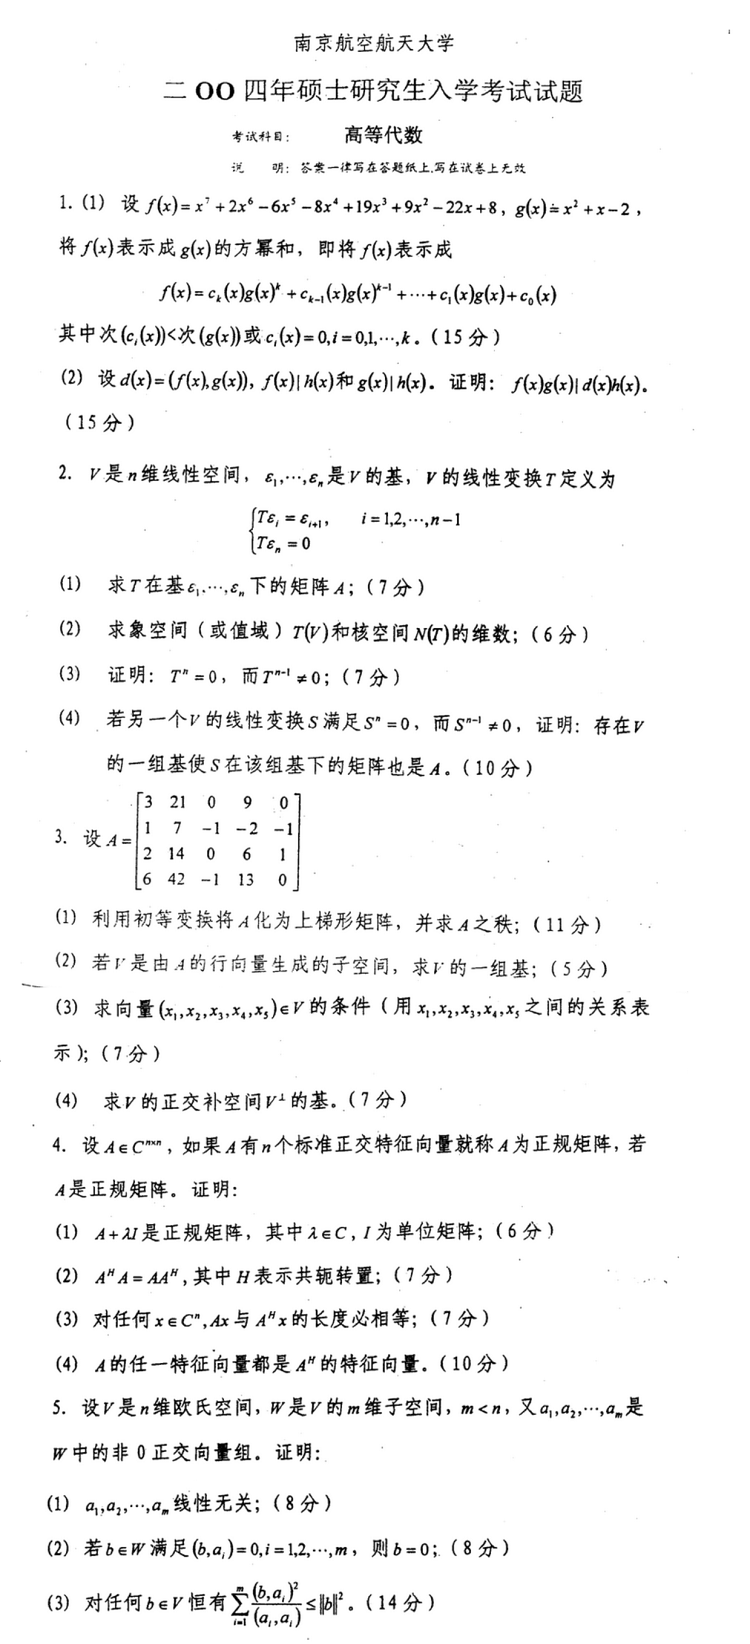 2004南京航空航天大学考研数学真题（高等代数）.png